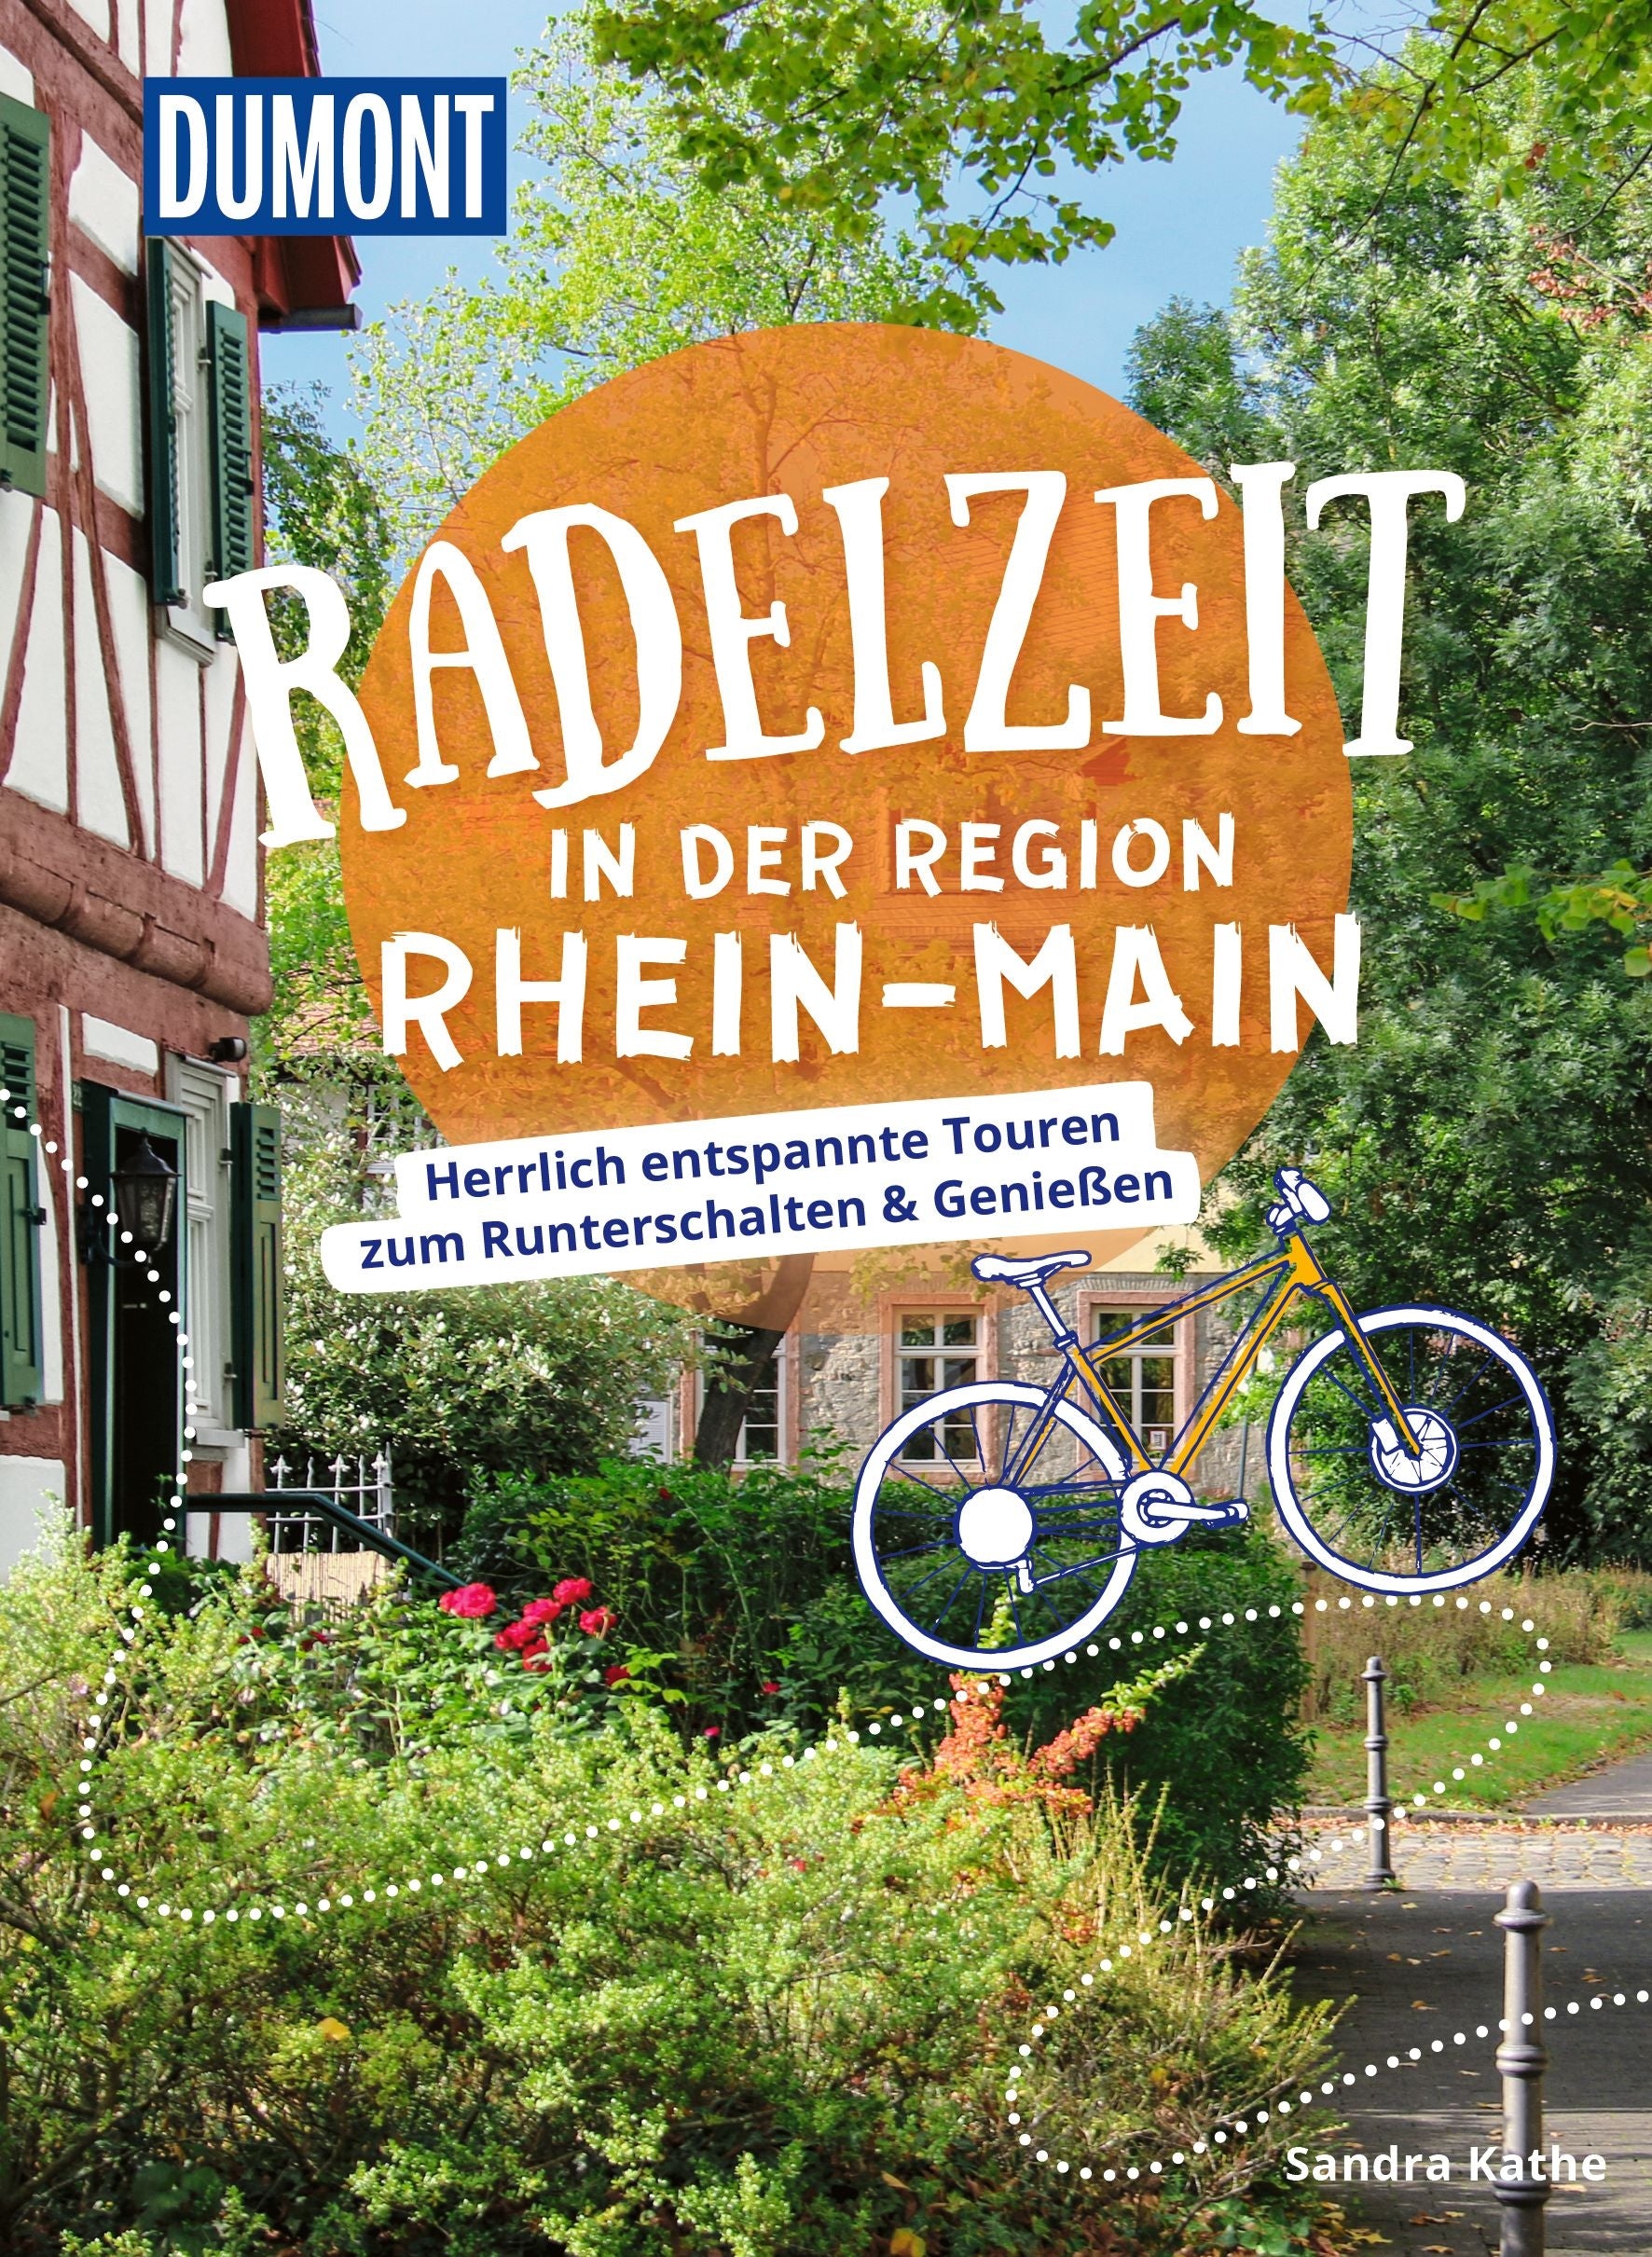 Region Rhein-Main - Radelzeit